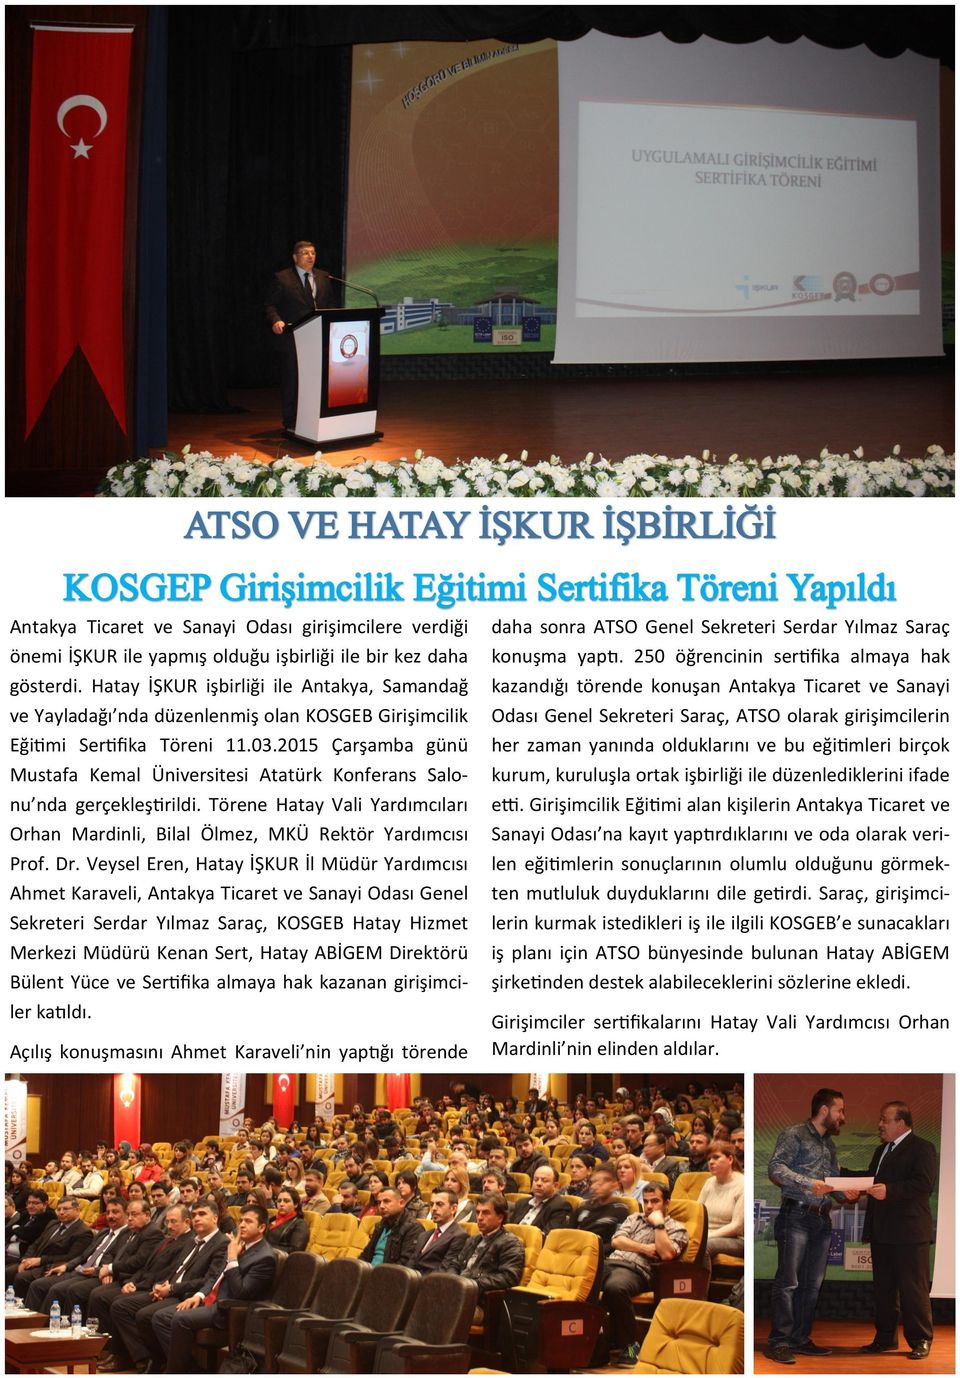 2015 Çarşamba günü Mustafa Kemal Üniversitesi Atatürk Konferans Salonu nda gerçekleştirildi. Törene Hatay Vali Yardımcıları Orhan Mardinli, Bilal Ölmez, MKÜ Rektör Yardımcısı Prof. Dr.